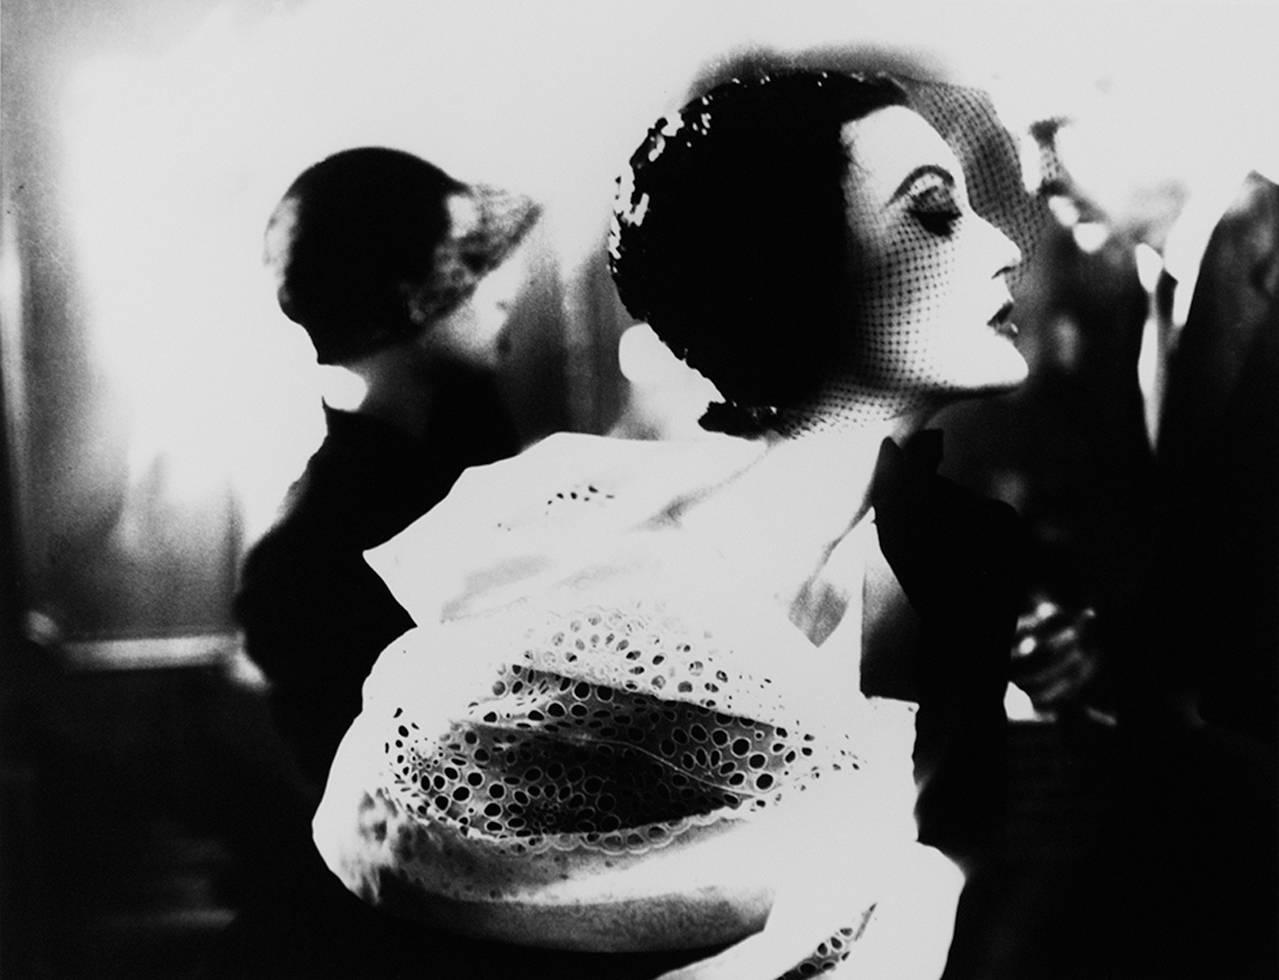 Black and White Photograph Lillian Bassman - Noir et blanc : Mary Jane Russell, Le Pavillion